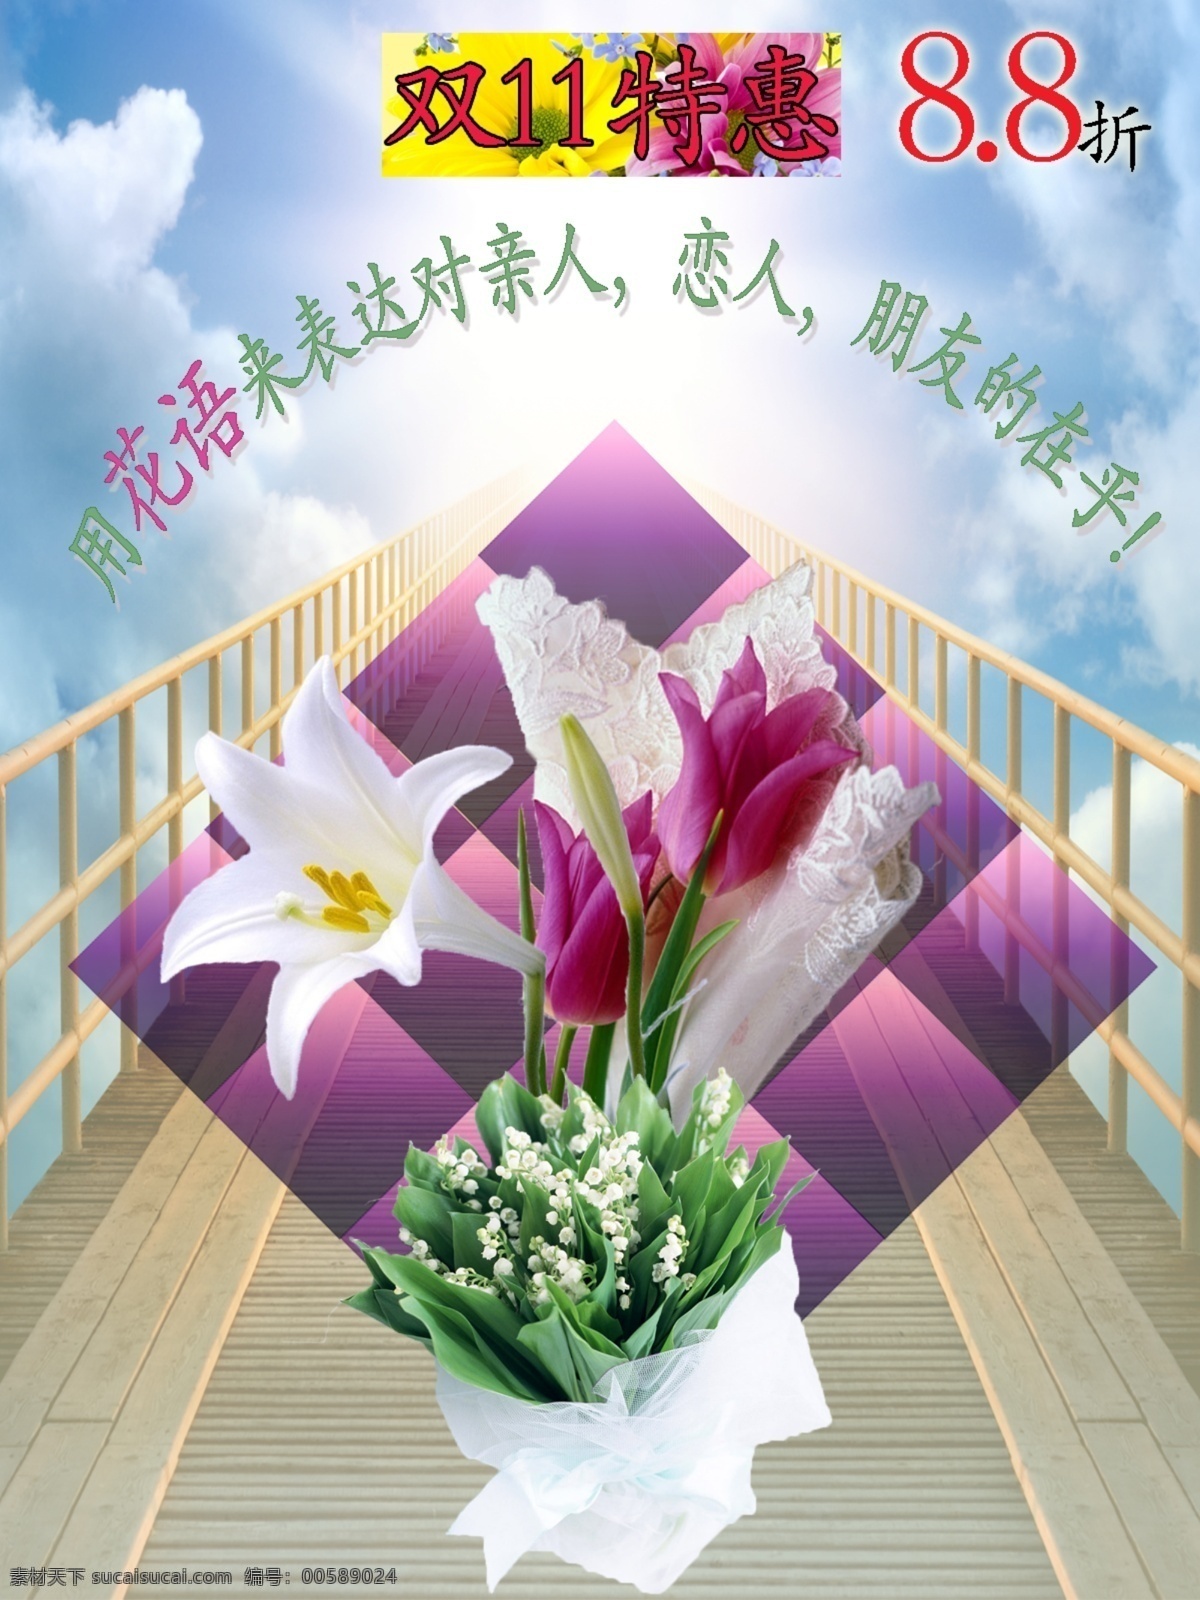 双 花店 特惠 活动 宣传海报 双11特惠 花语 鲜花 真情 8.8折 光明 白色